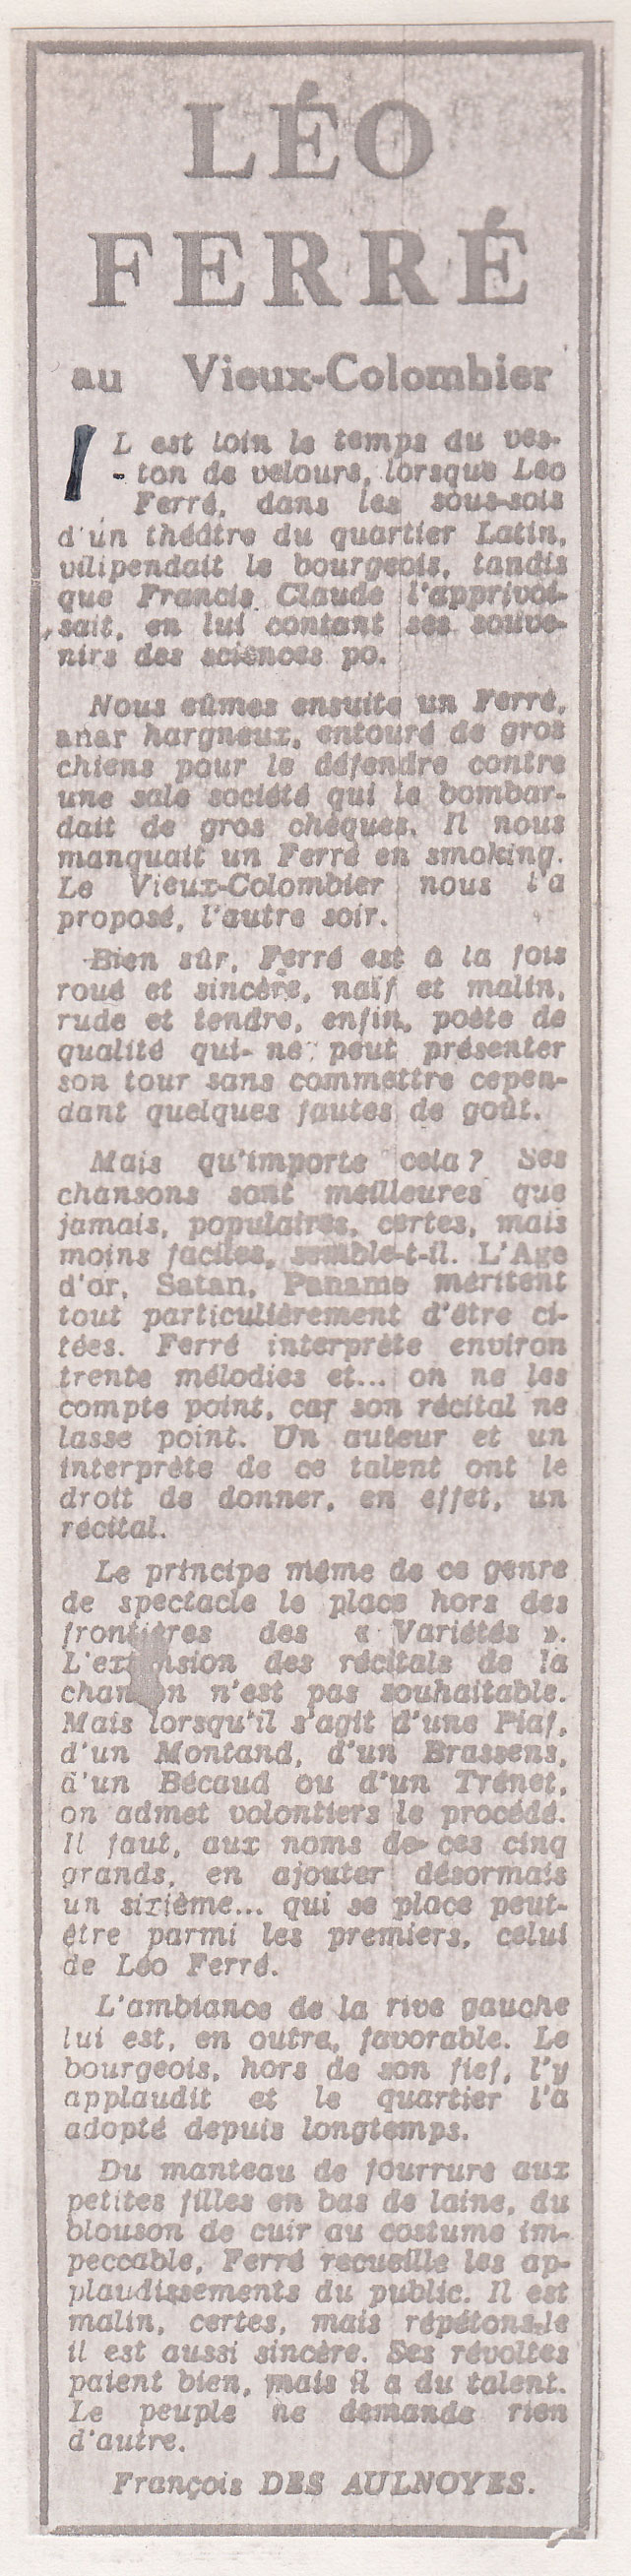 Léo Ferré, Combat du 02/02/1961